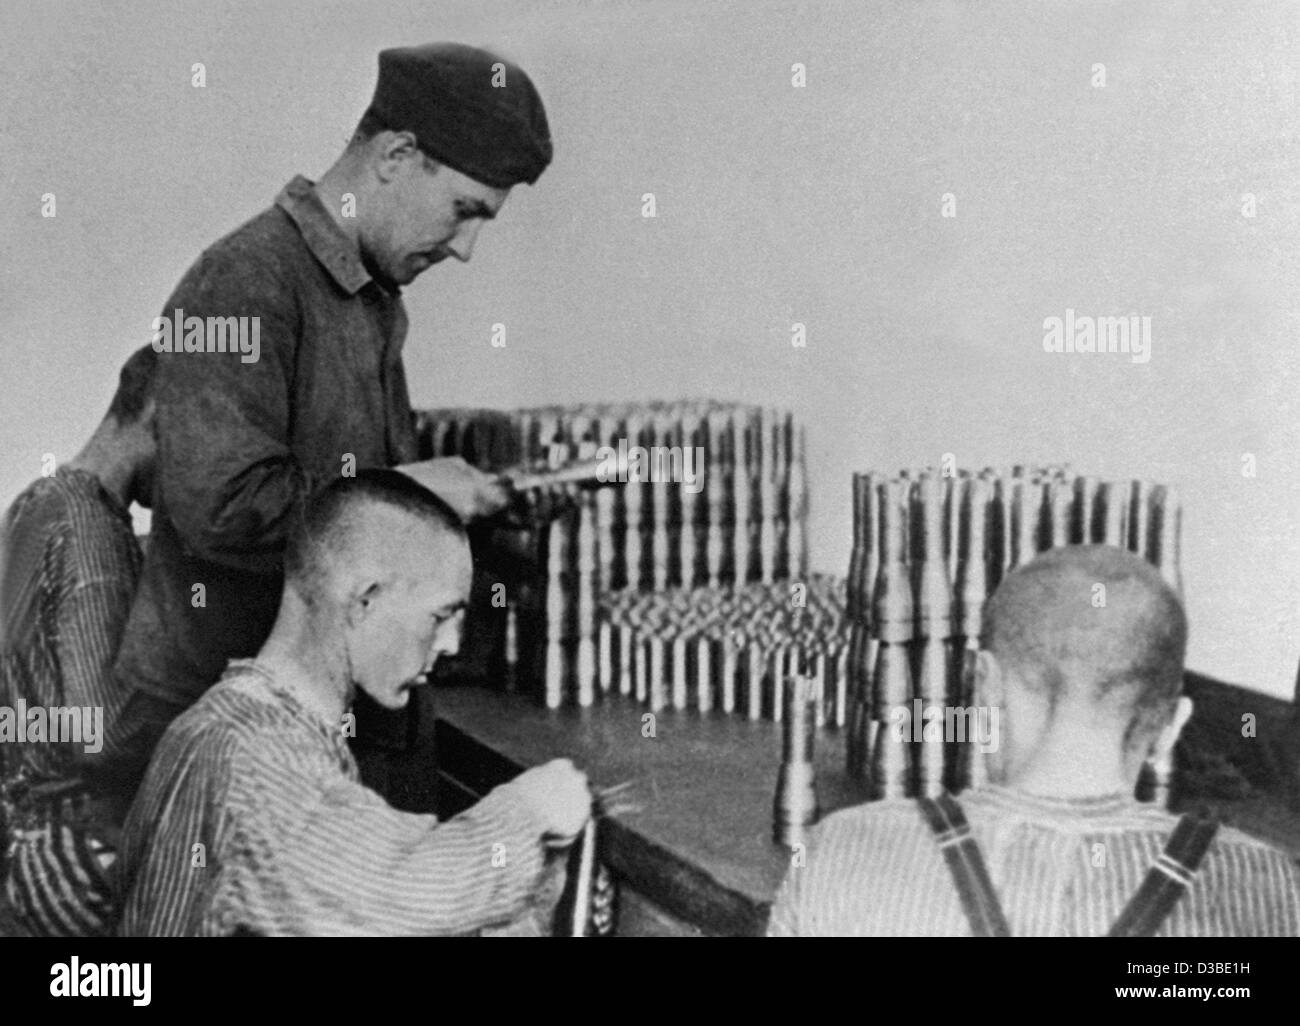 (Dpa-Dateien) - Häftlinge des Konzentrationslagers Dachau Herstellung von Kriegsmaterial in der Nähe von Dachau, Süddeutschland (undatiert Filer).  Viele KZ-Häftlinge mussten während des zweiten Weltkrieges in der Rüstungsindustrie arbeiten sowie Bunker zu bauen, Fabrik Maschinen bedienen und arbeiten Stockfoto